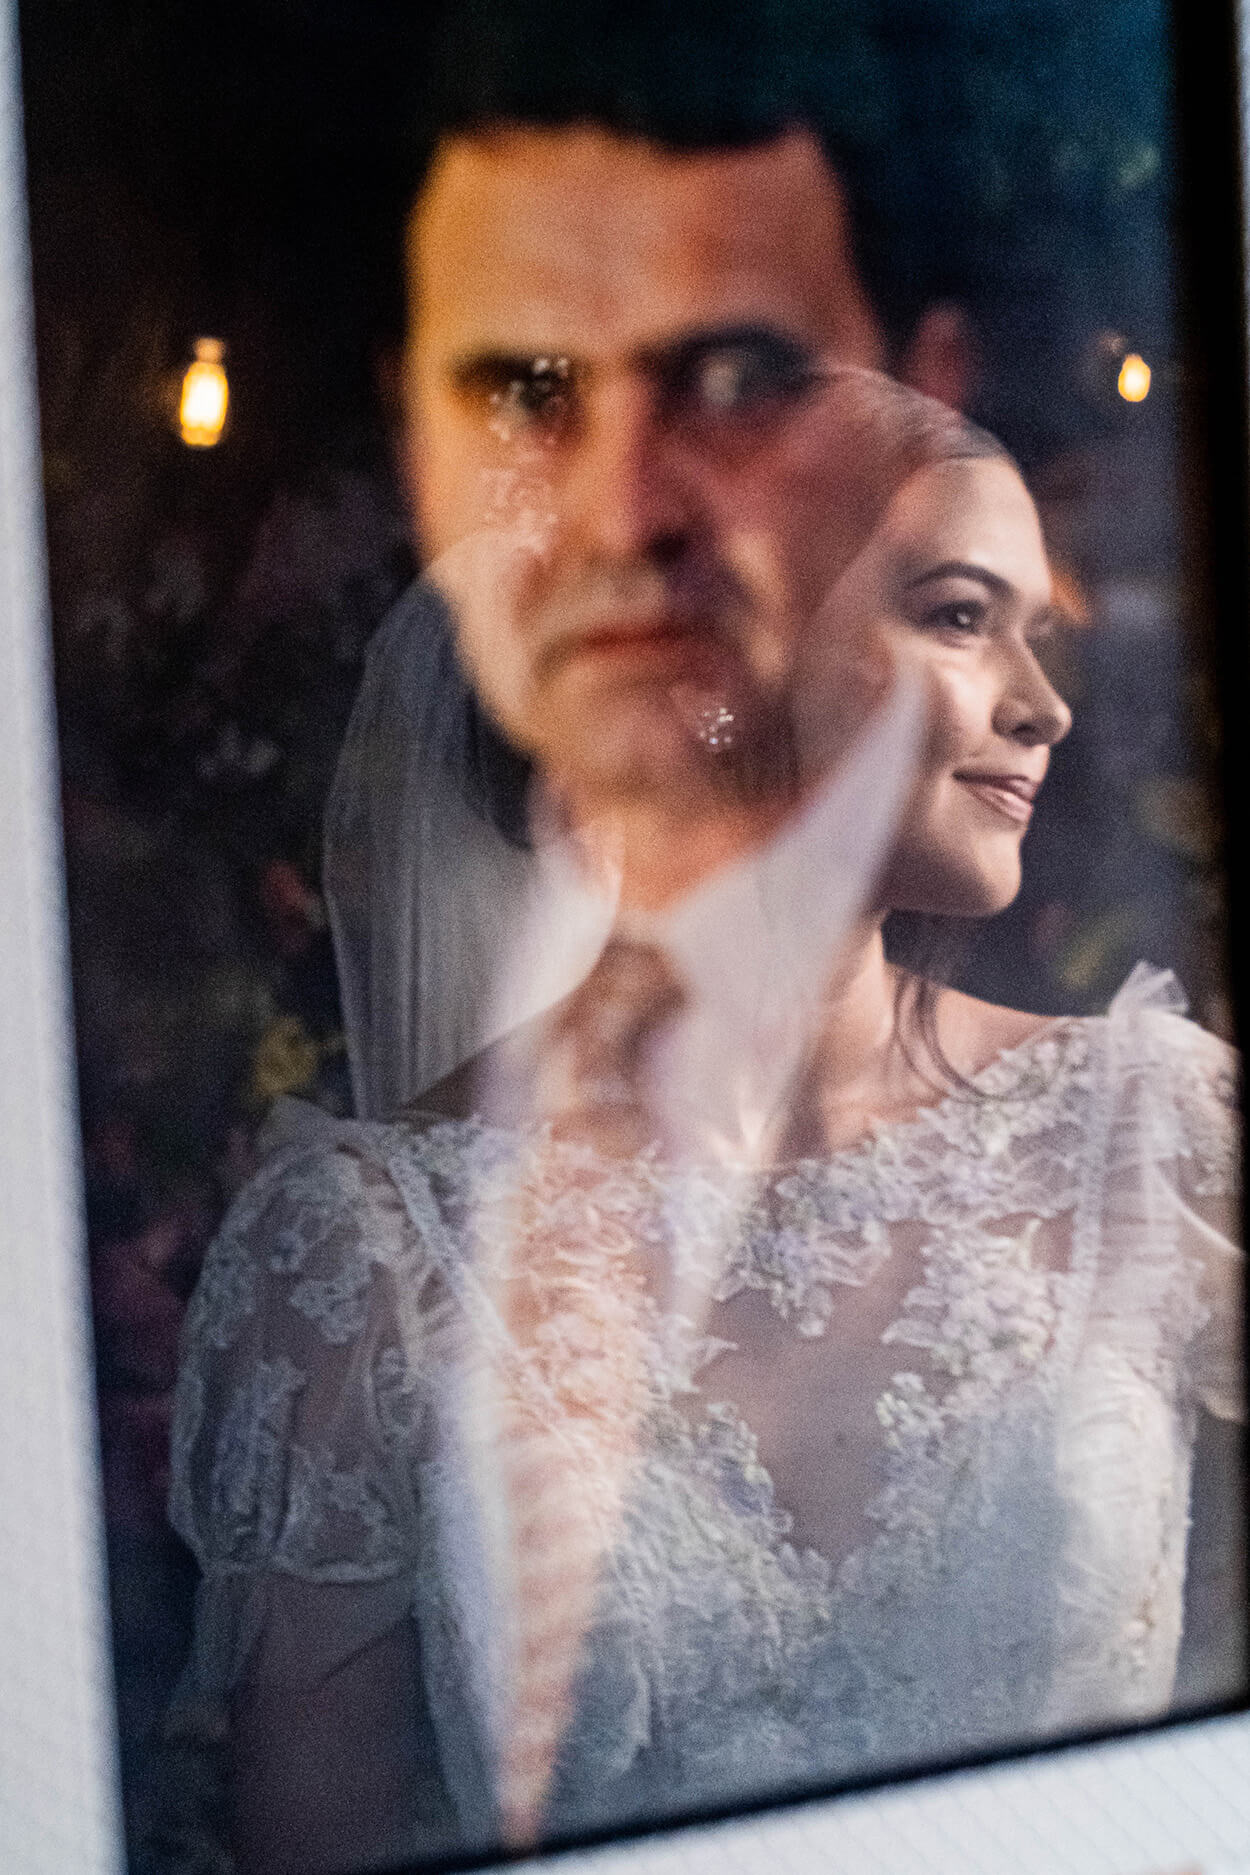 foto de noiva refletida no retrato com foto do pai da noiva